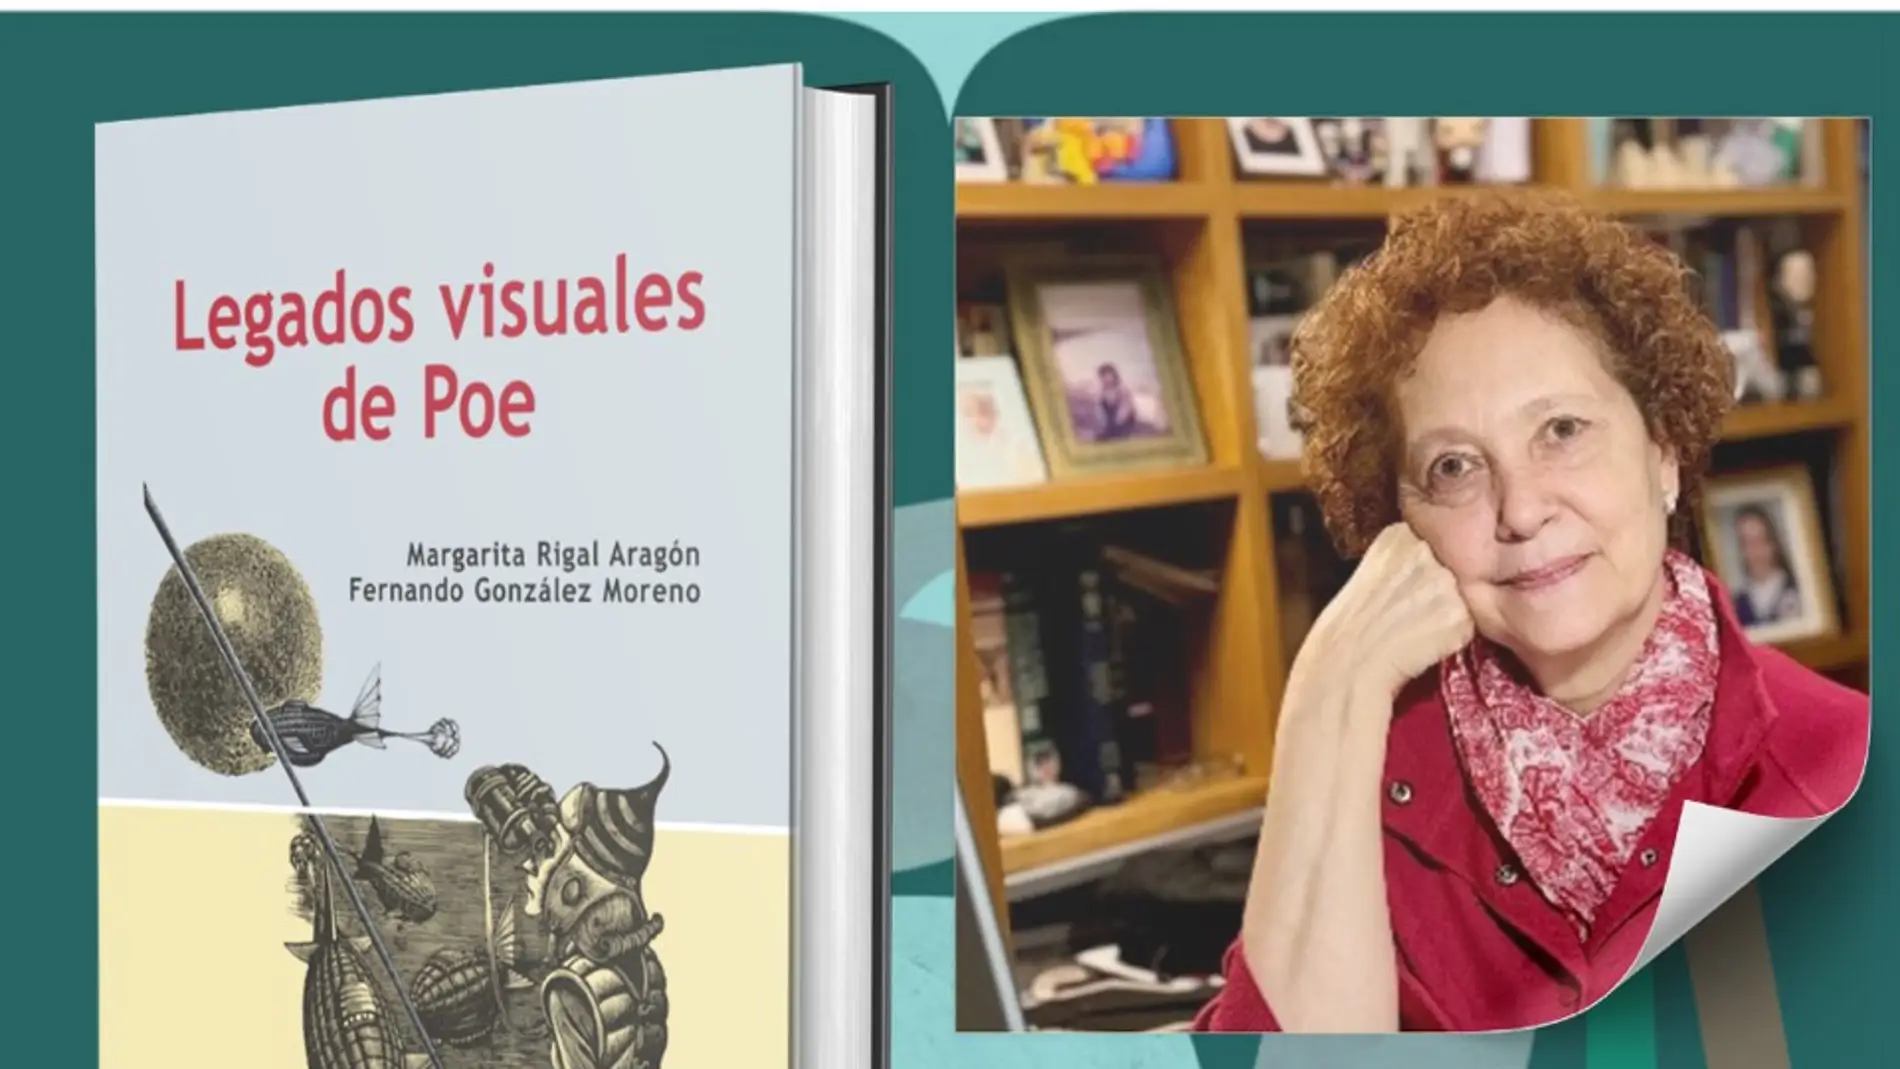 Tres profesores de Albacete presentarán el libro “Legados visuales de Poe”